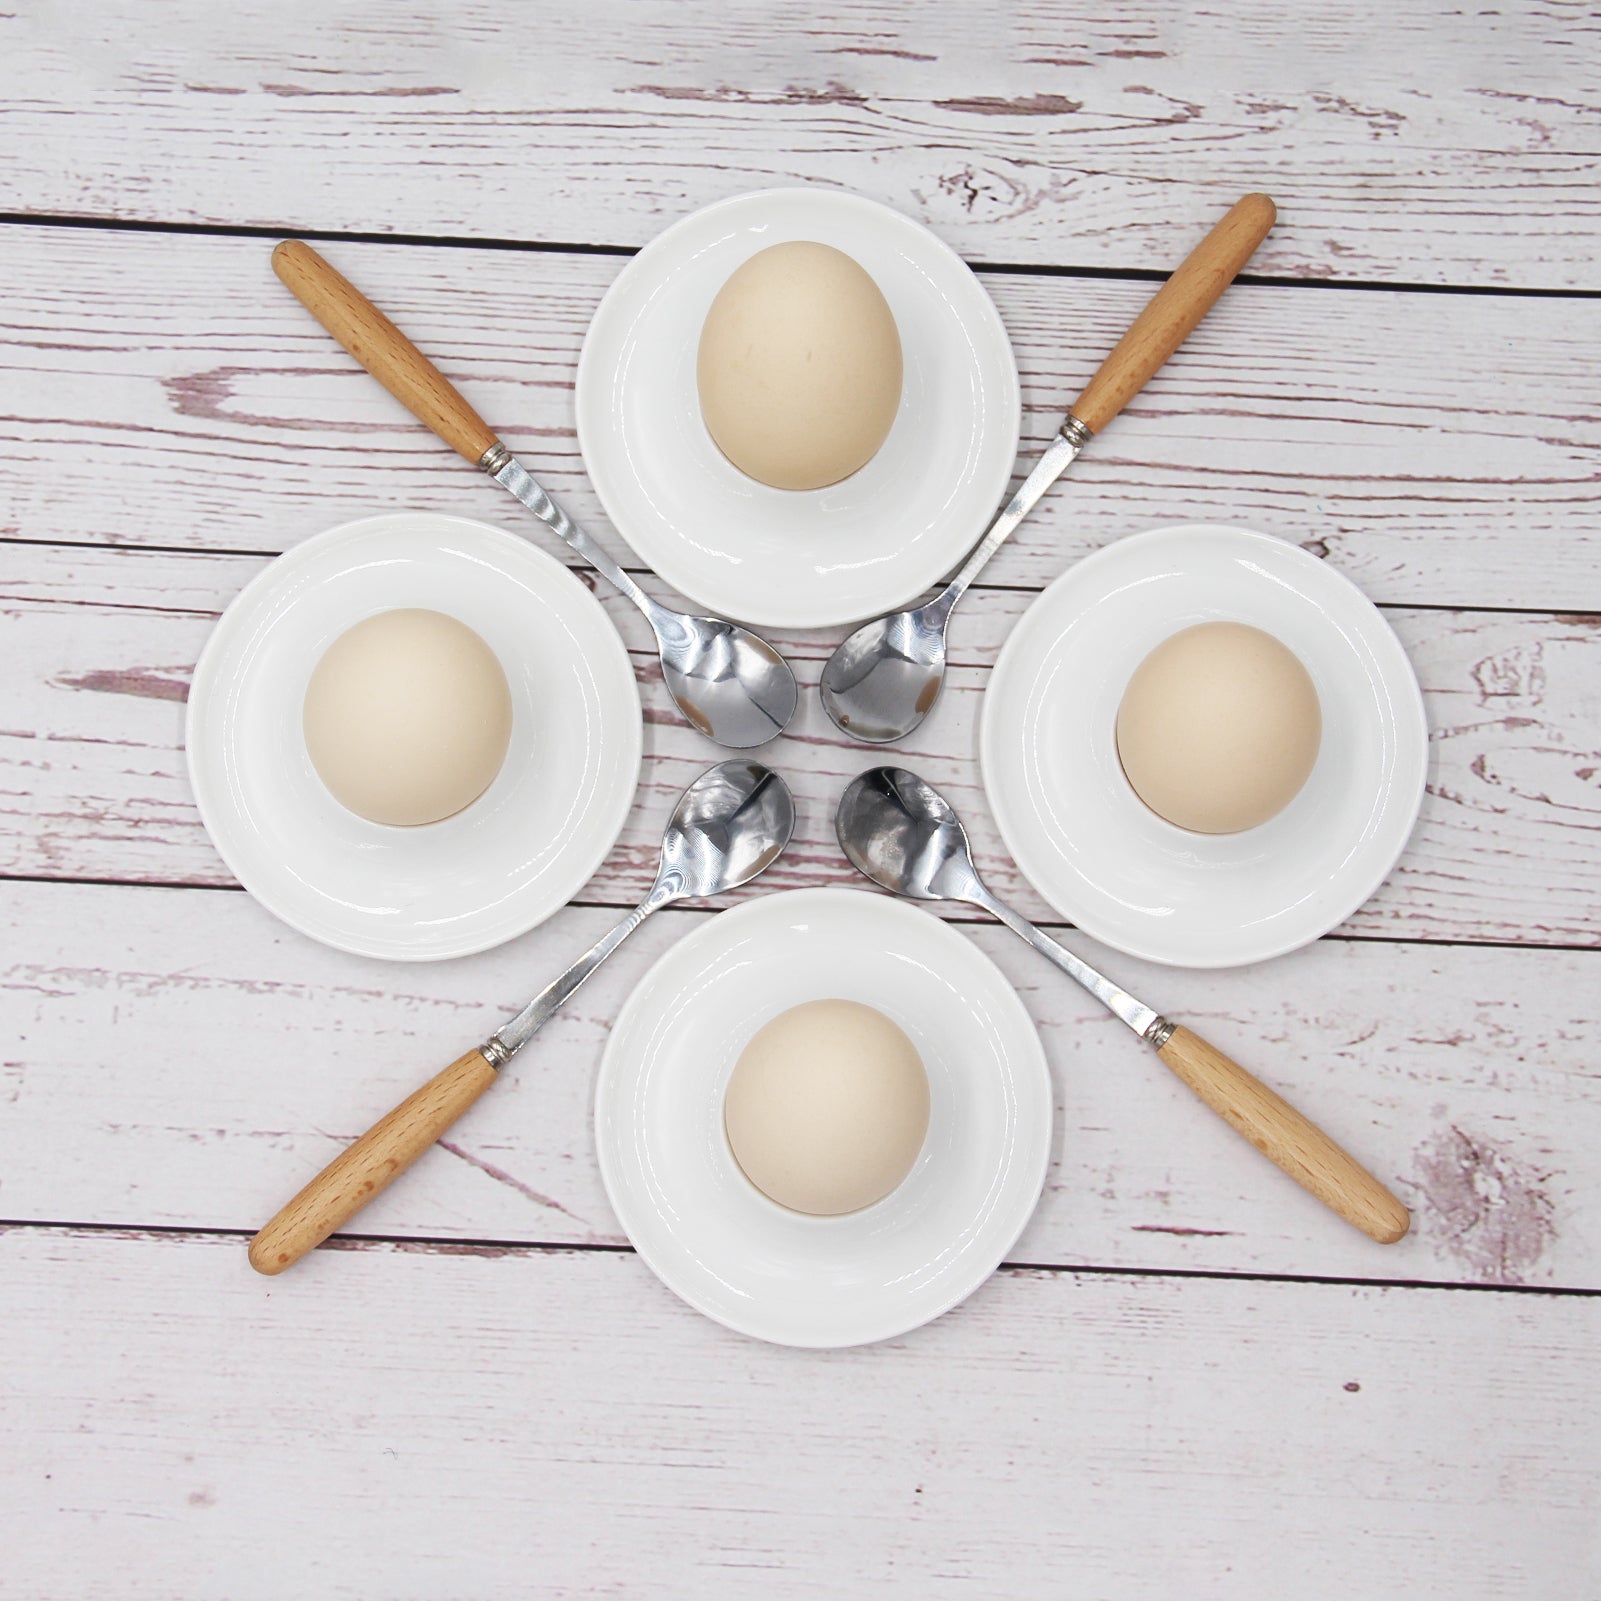 JAMOR Round Egg Ceramic Egg Cup White Ceramic Egg Rack Set Egg Tray Egg Cup Holder, Used For Hard And Soft Boiled Eggs Ceramic Egg Rack